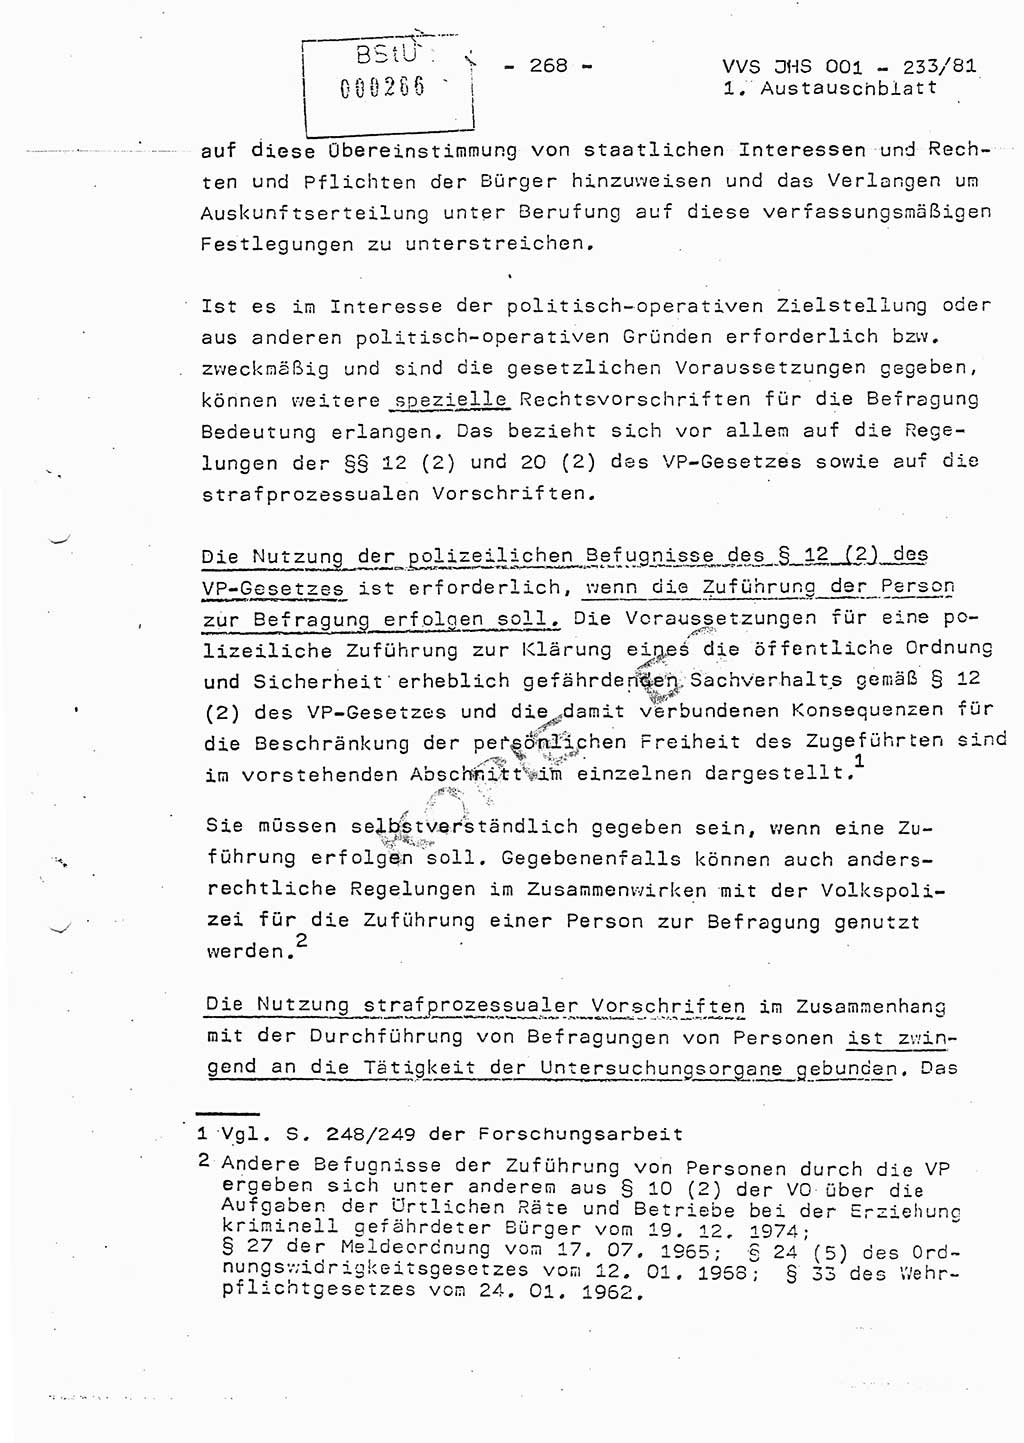 Dissertation Oberstleutnant Horst Zank (JHS), Oberstleutnant Dr. Karl-Heinz Knoblauch (JHS), Oberstleutnant Gustav-Adolf Kowalewski (HA Ⅸ), Oberstleutnant Wolfgang Plötner (HA Ⅸ), Ministerium für Staatssicherheit (MfS) [Deutsche Demokratische Republik (DDR)], Juristische Hochschule (JHS), Vertrauliche Verschlußsache (VVS) o001-233/81, Potsdam 1981, Blatt 268 (Diss. MfS DDR JHS VVS o001-233/81 1981, Bl. 268)